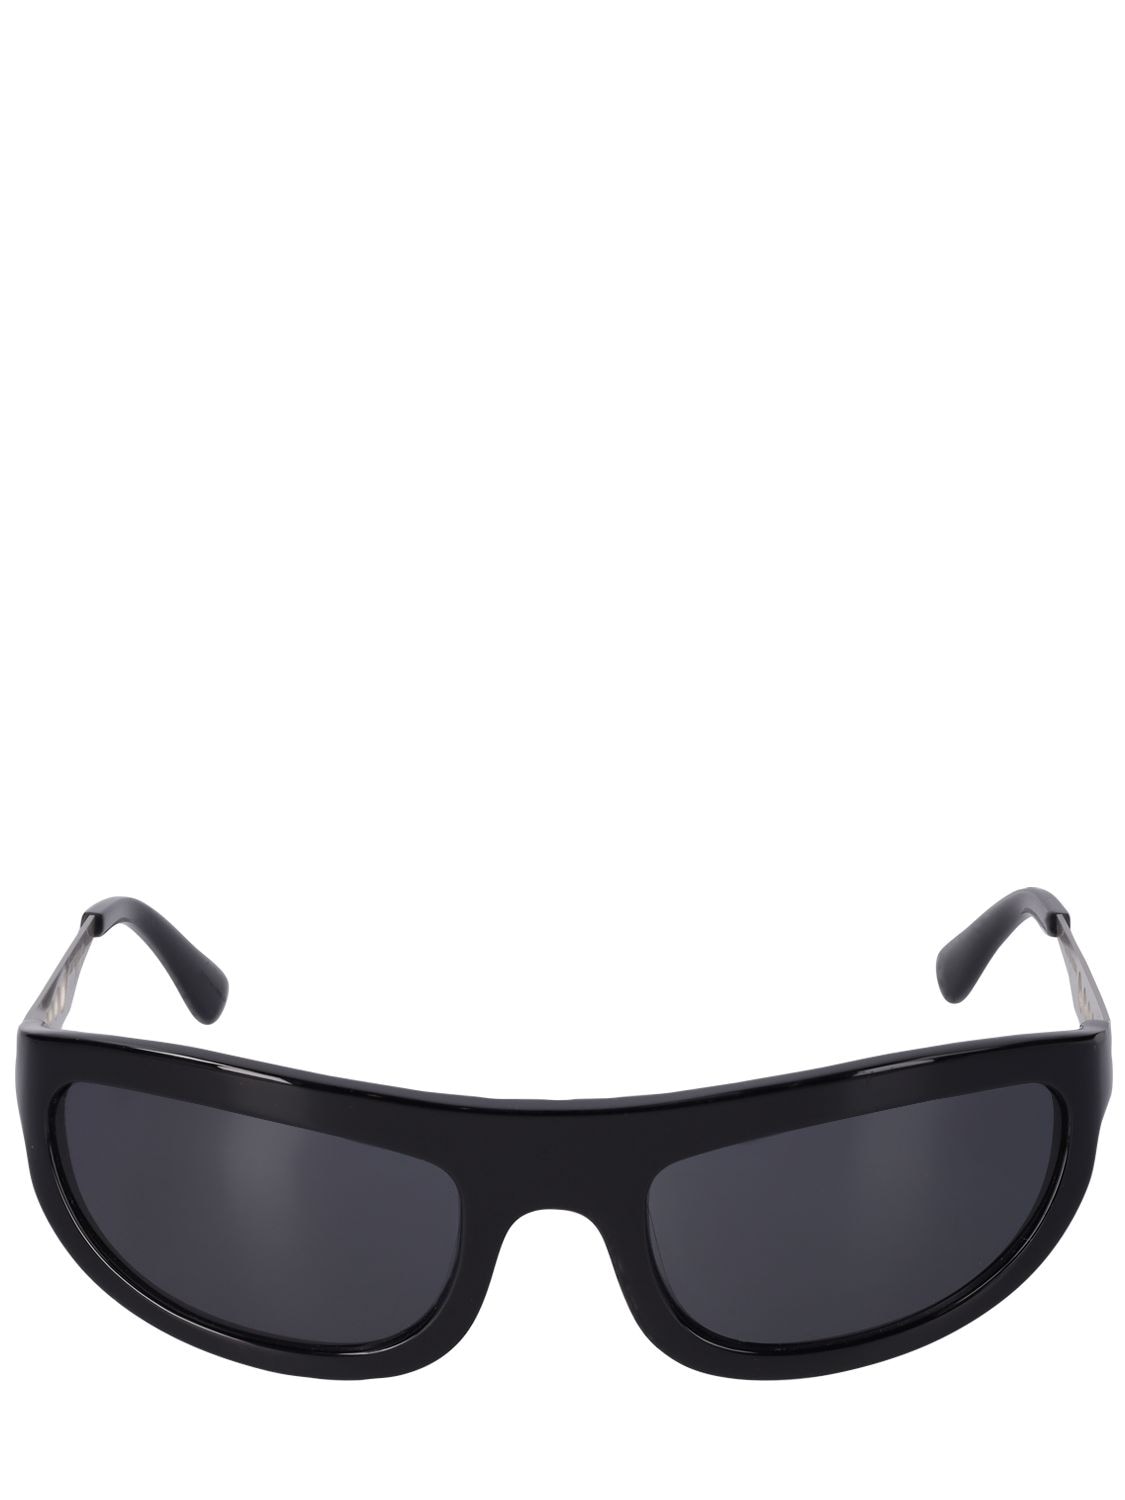 A Better Feeling Corten Black Steel Sunglasses